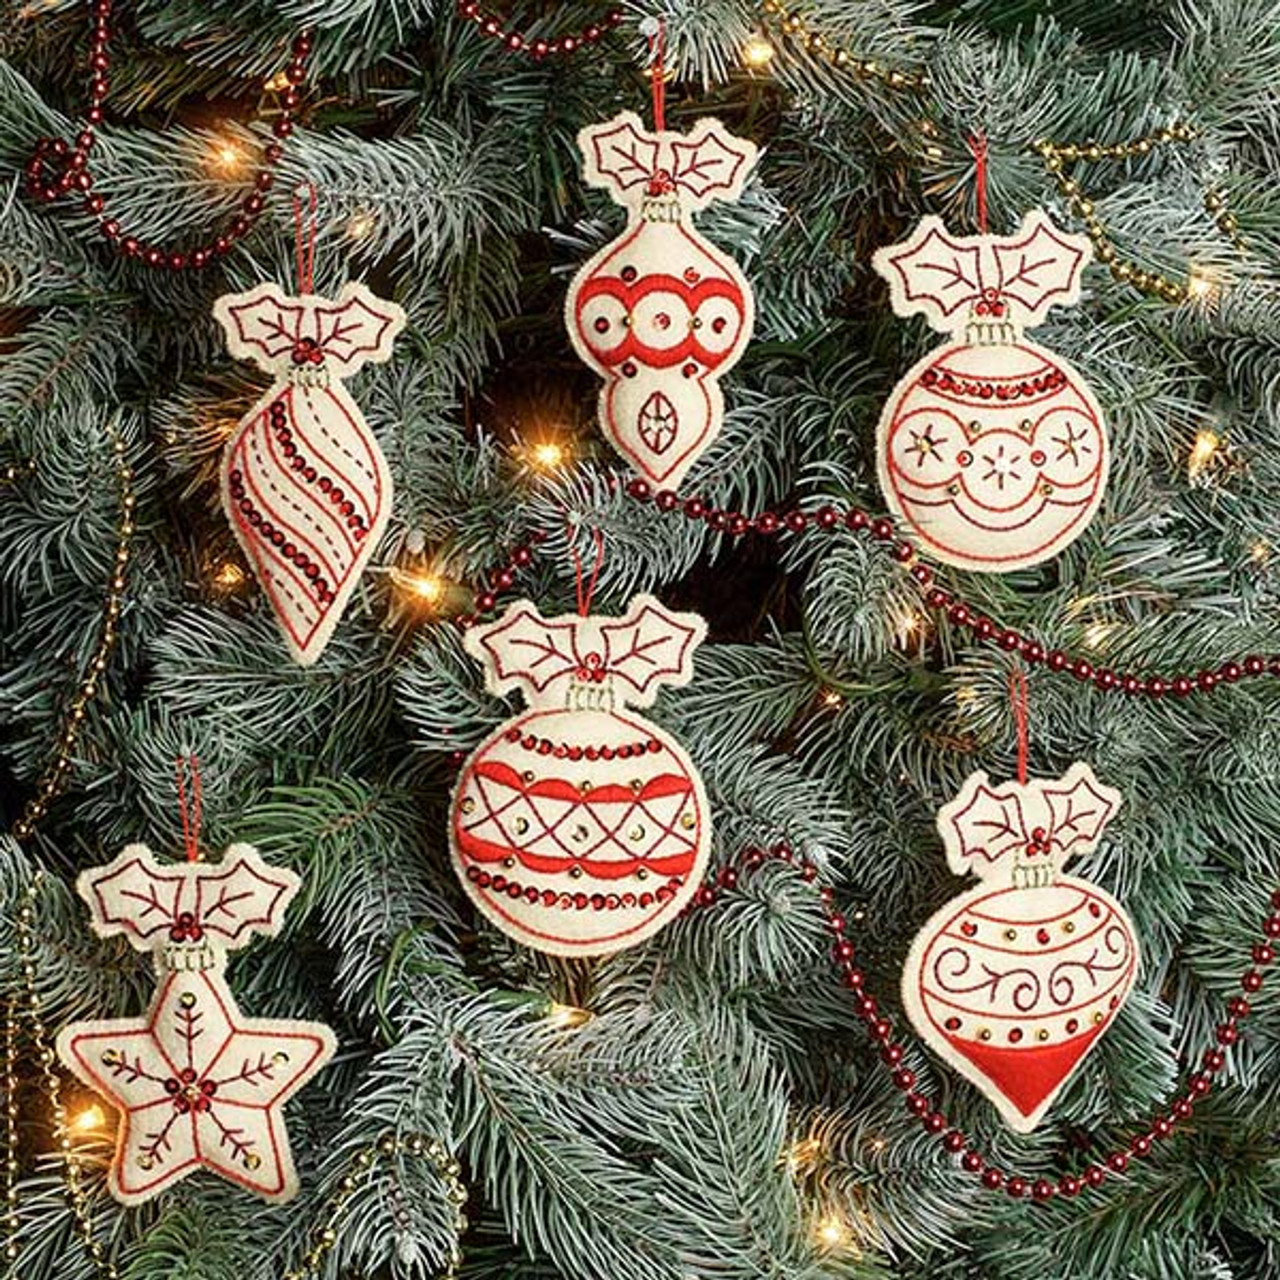 Felt Applique Ornament Kit - Classic Christmas | Ornament Kit for Sale